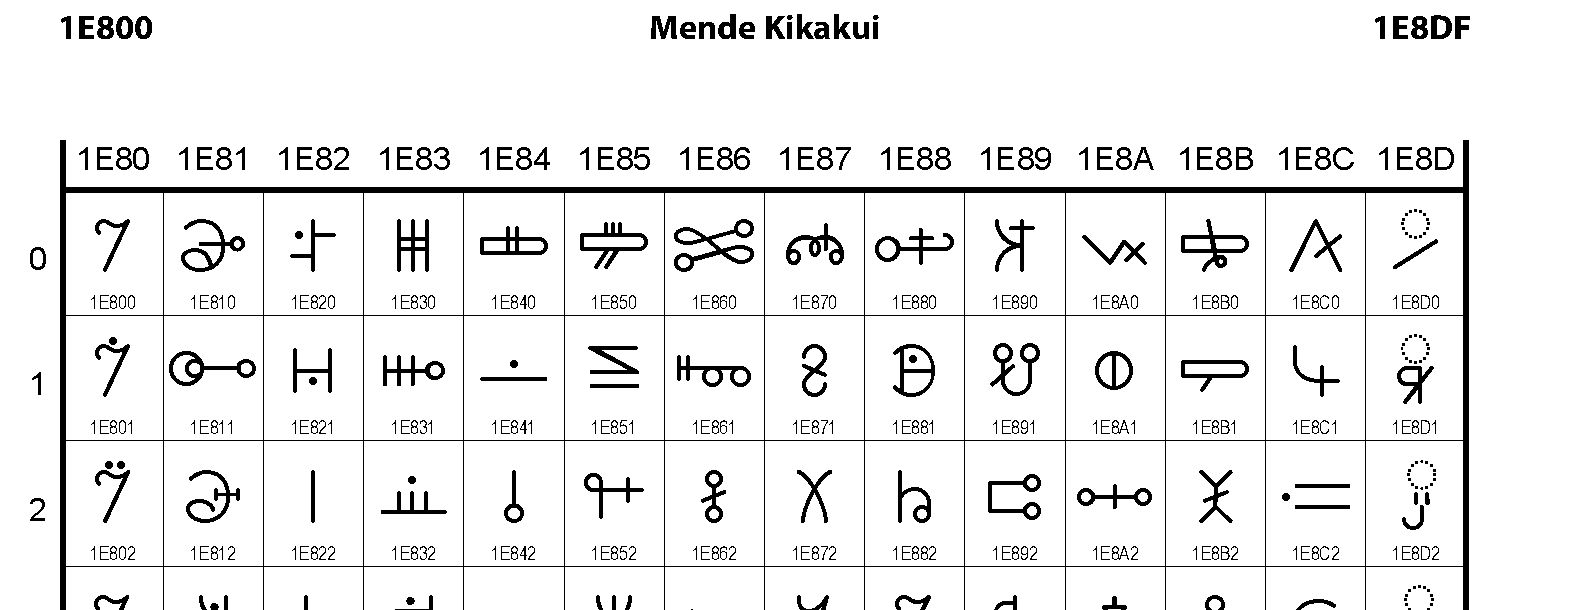 Unicode - Mende Kikakui